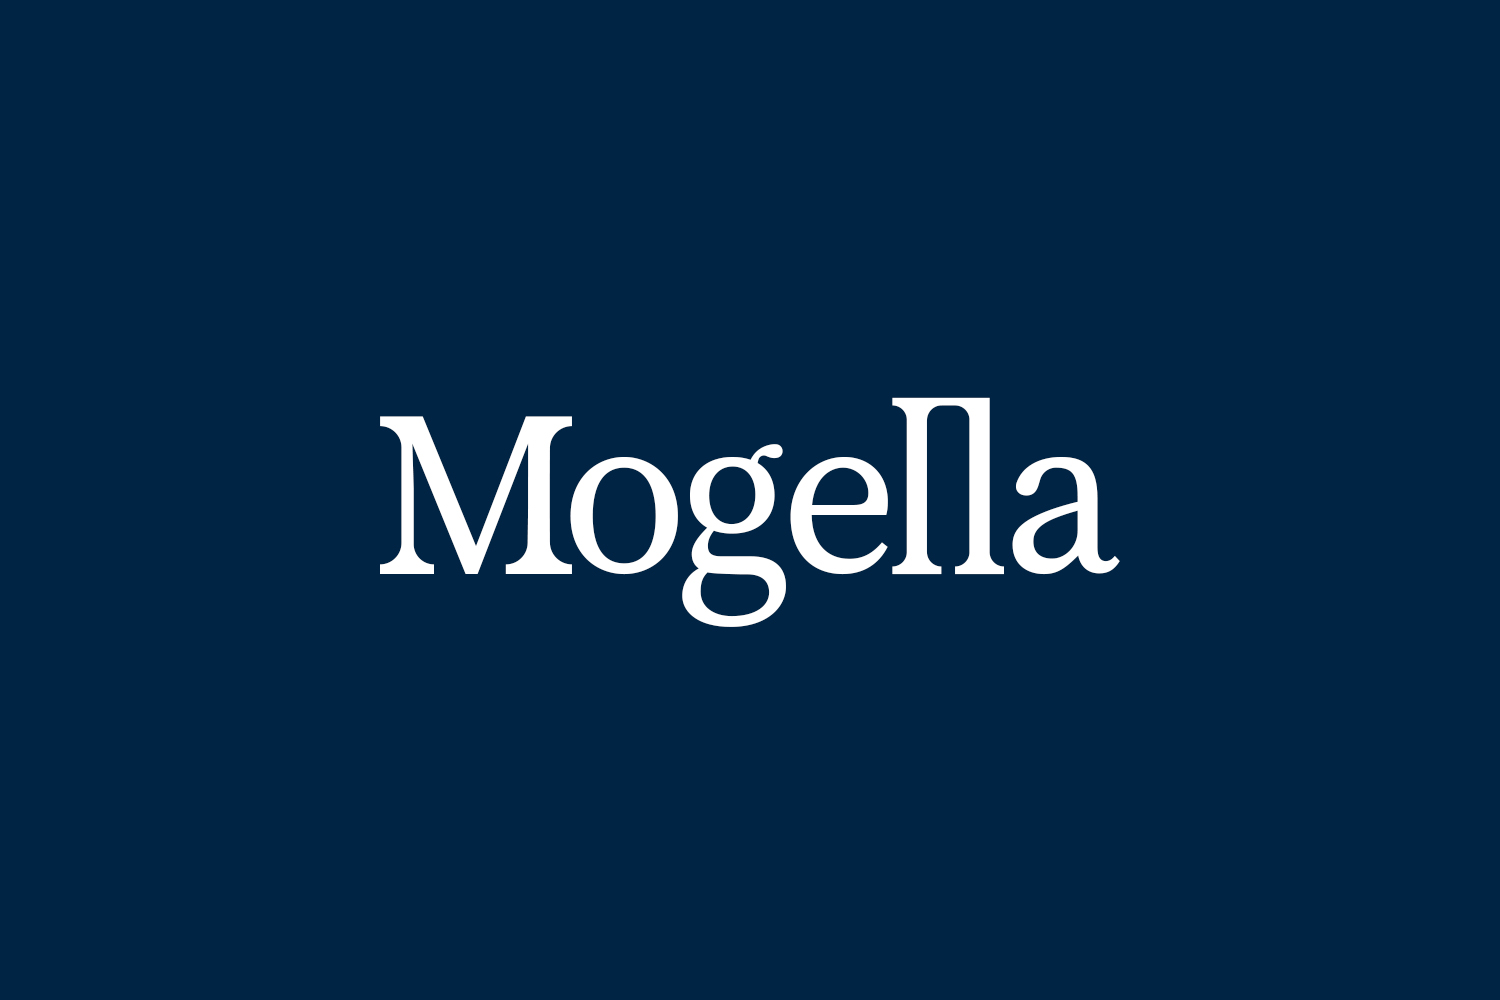 Mogella Free Font